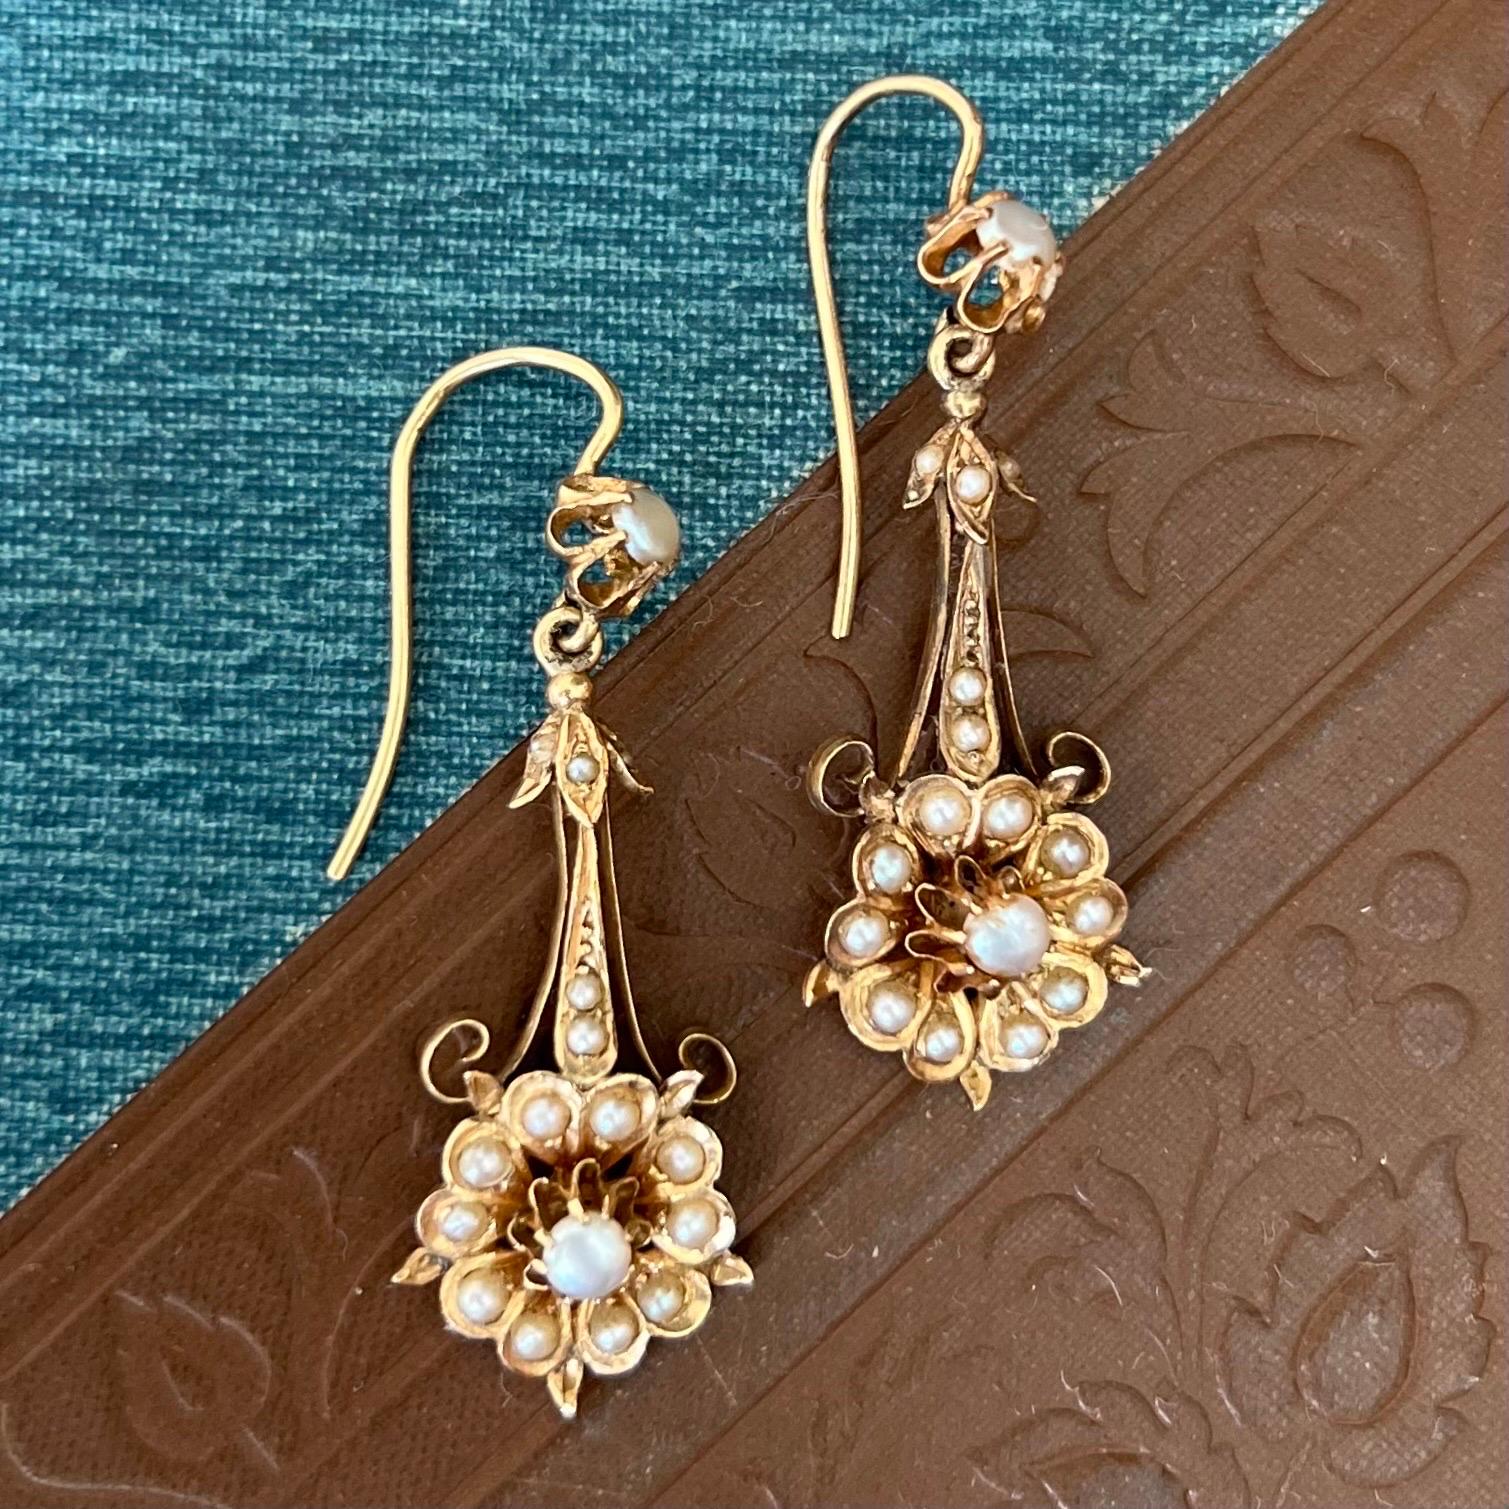 Diese Ohrringe aus 14-karätigem Gold des späten 19. Jahrhunderts sind mit siebzehn runden Perlen besetzt. Die Ohrringe sind in Form einer schönen Blume mit Blättern gestaltet und haben eine gelenkige Rahmenstruktur. Die Blüte ist mit einem Cluster